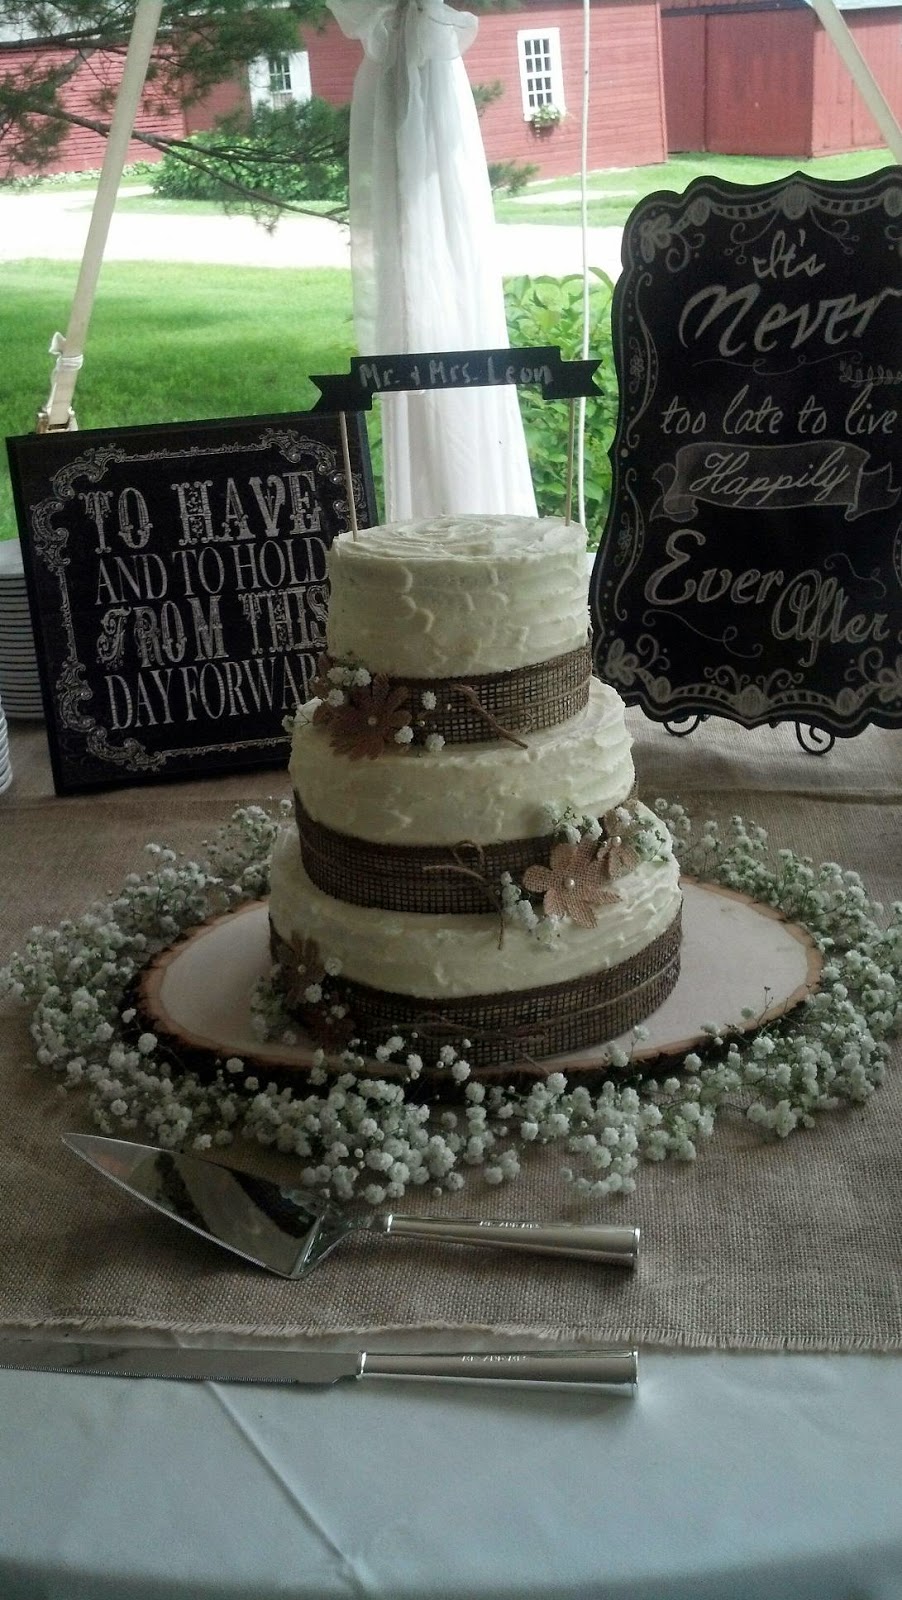 Sweetheart bakery wedding cakes